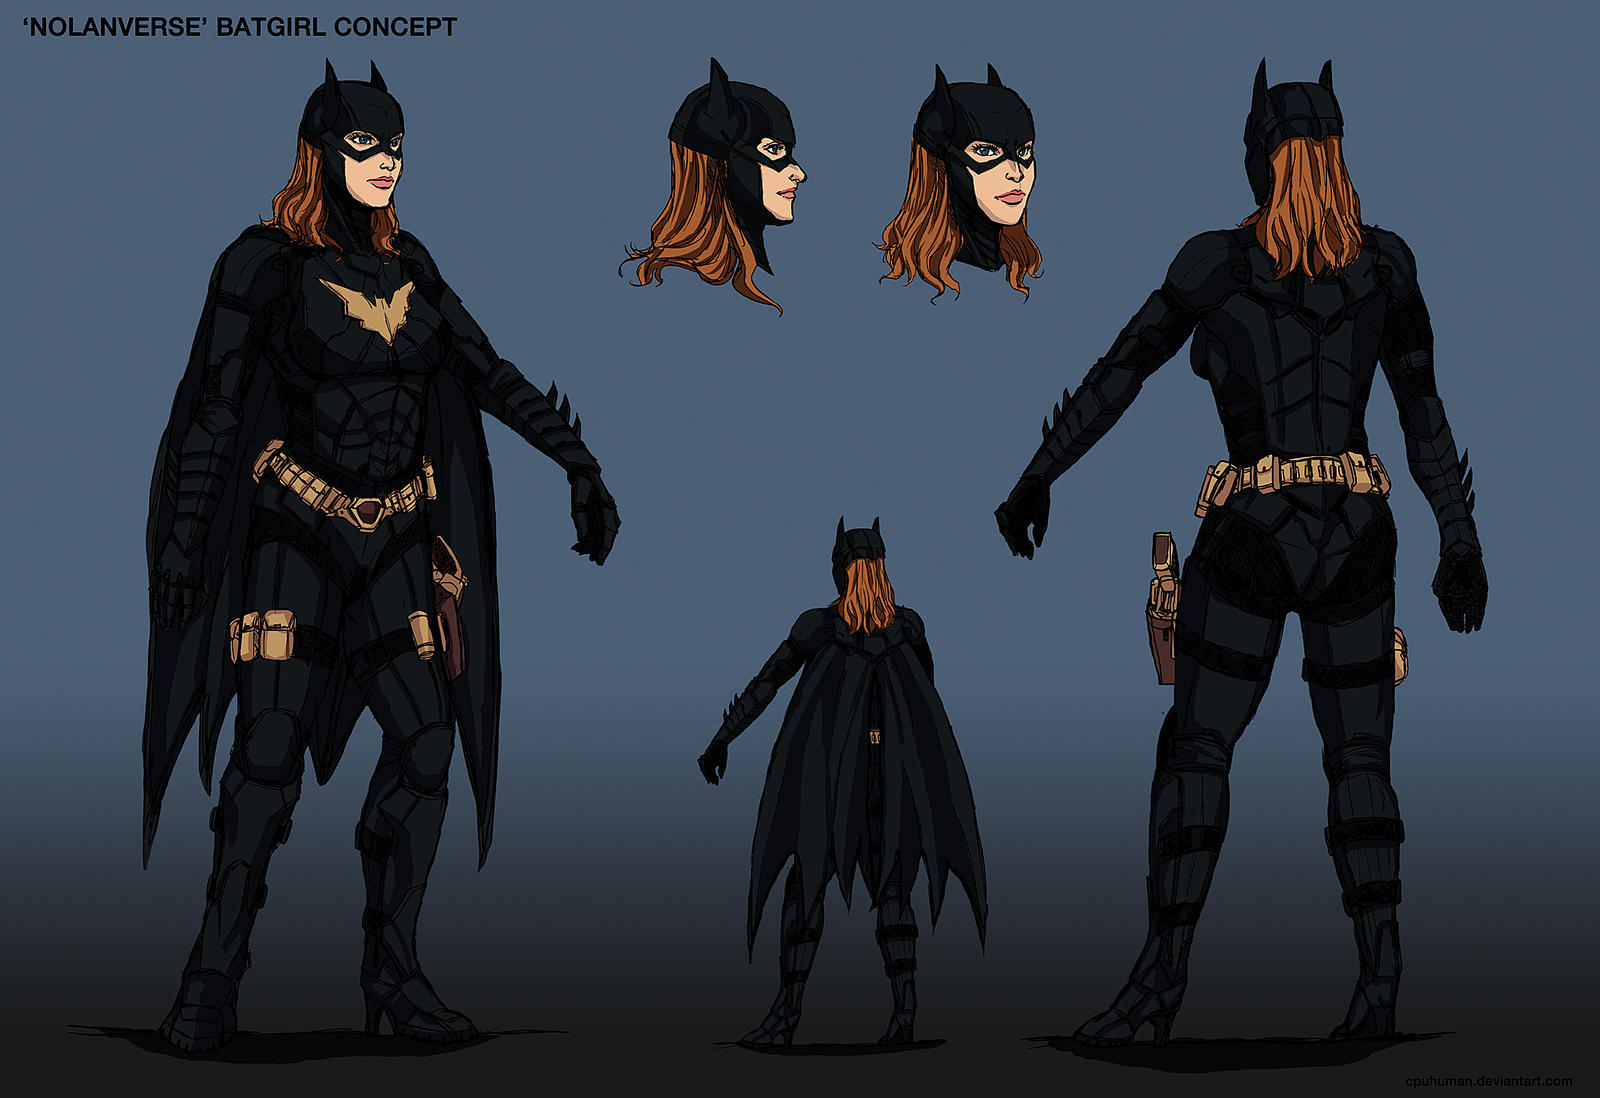 Nolanverse' Batgirl Concept Design by cpuhuman on DeviantArt